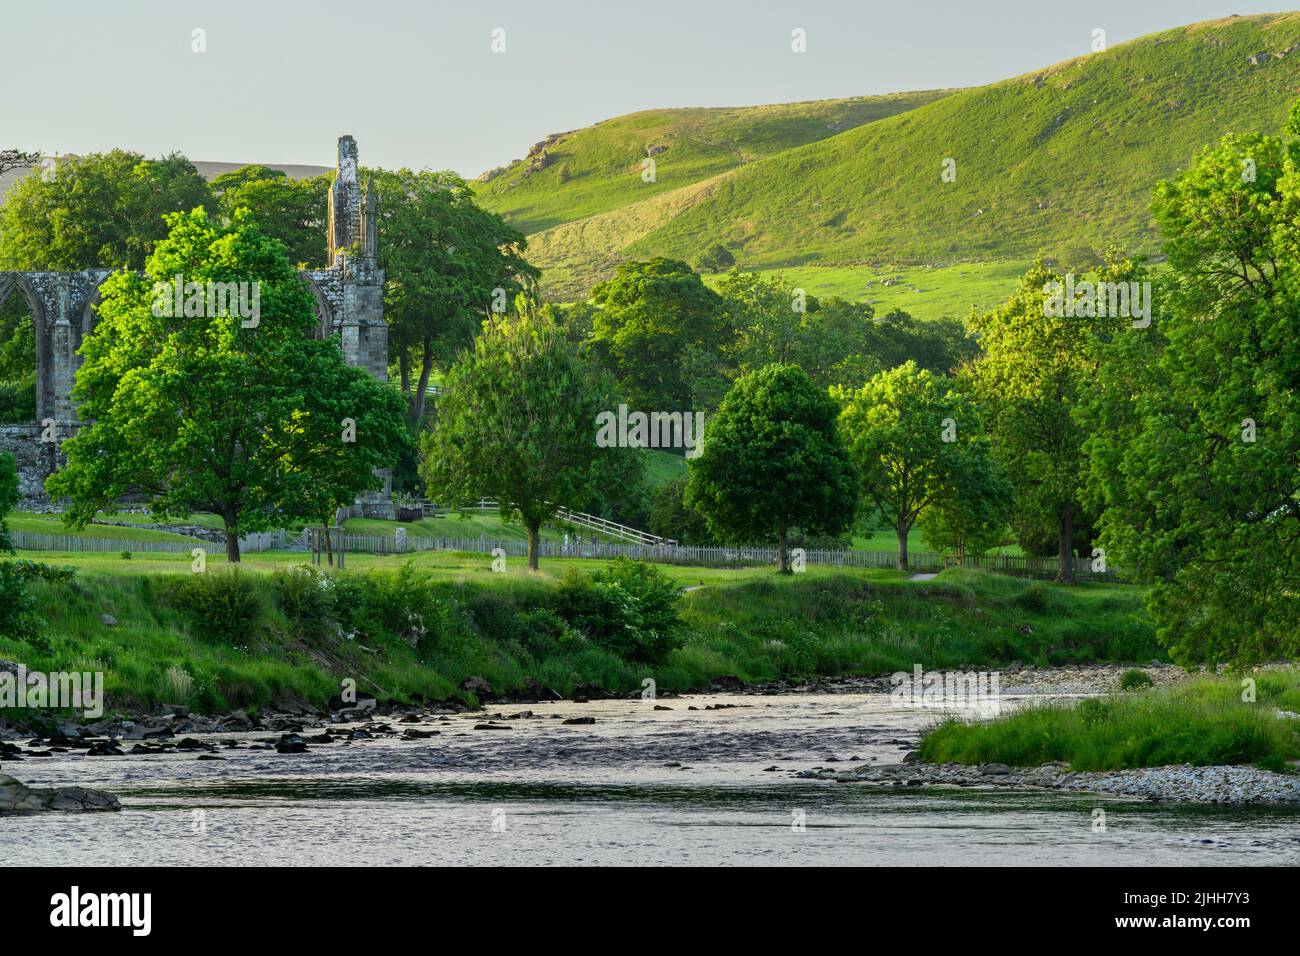 Abbaye de Bolton (magnifique ruine historique au bord de la rivière, rivière sinueuse, collines ondoyantes ensoleillées, soirée d'été) - Wharfedale Yorkshire Dales, Angleterre, Royaume-Uni Banque D'Images